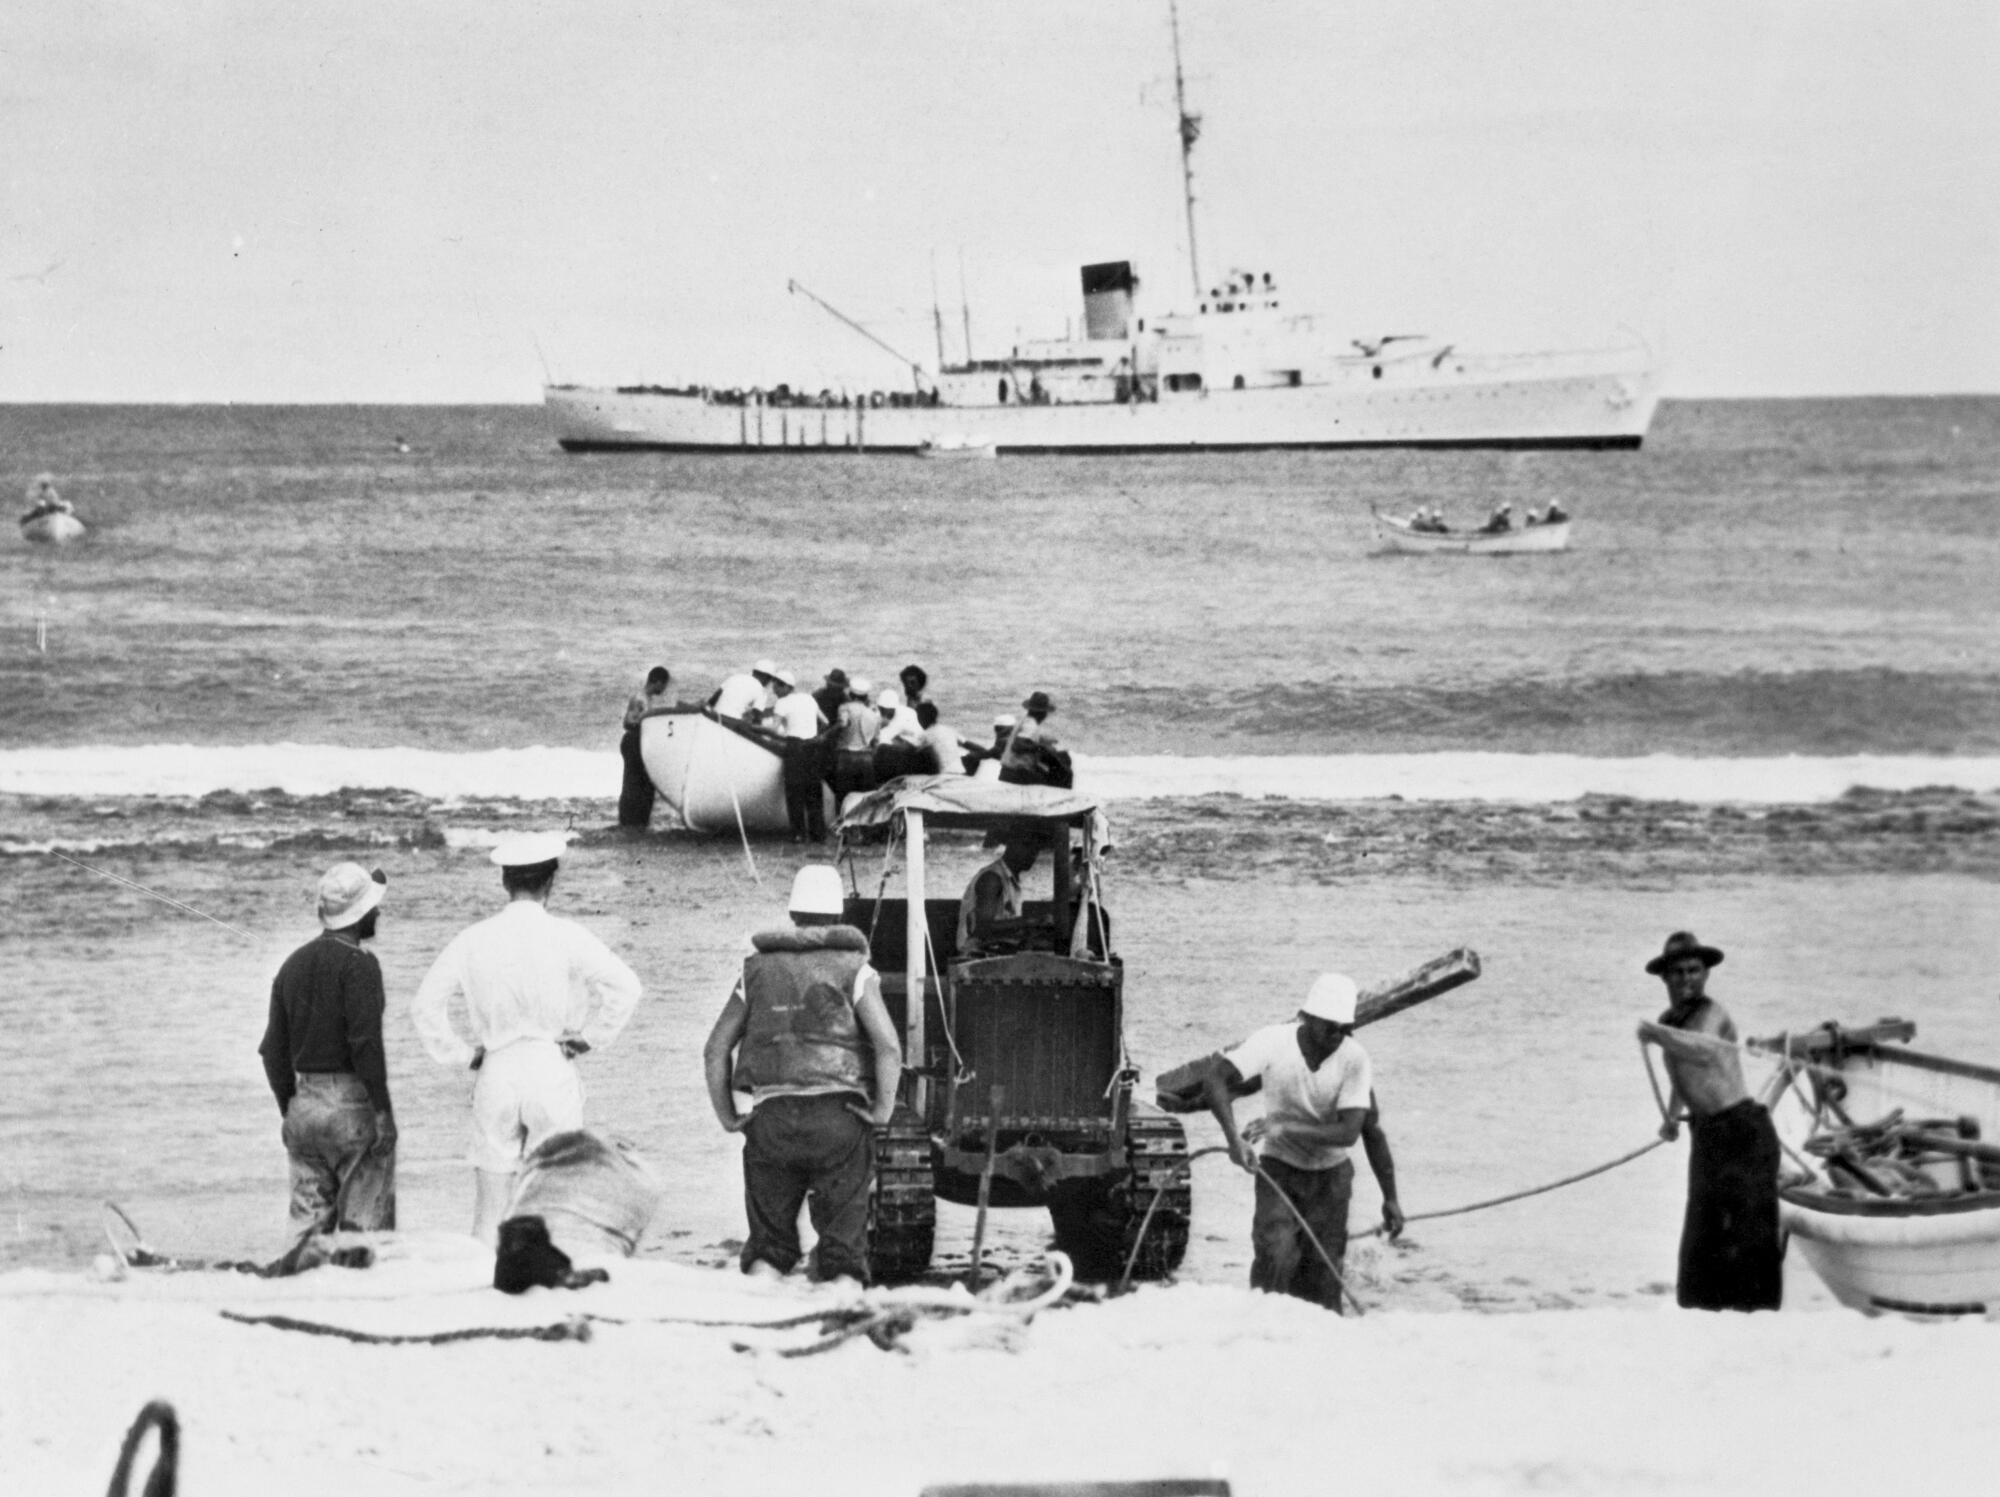 海滩上的人们开着拖拉机搬运设备，其他人则把小船搁浅，而背景中则停泊着一艘更大的船。